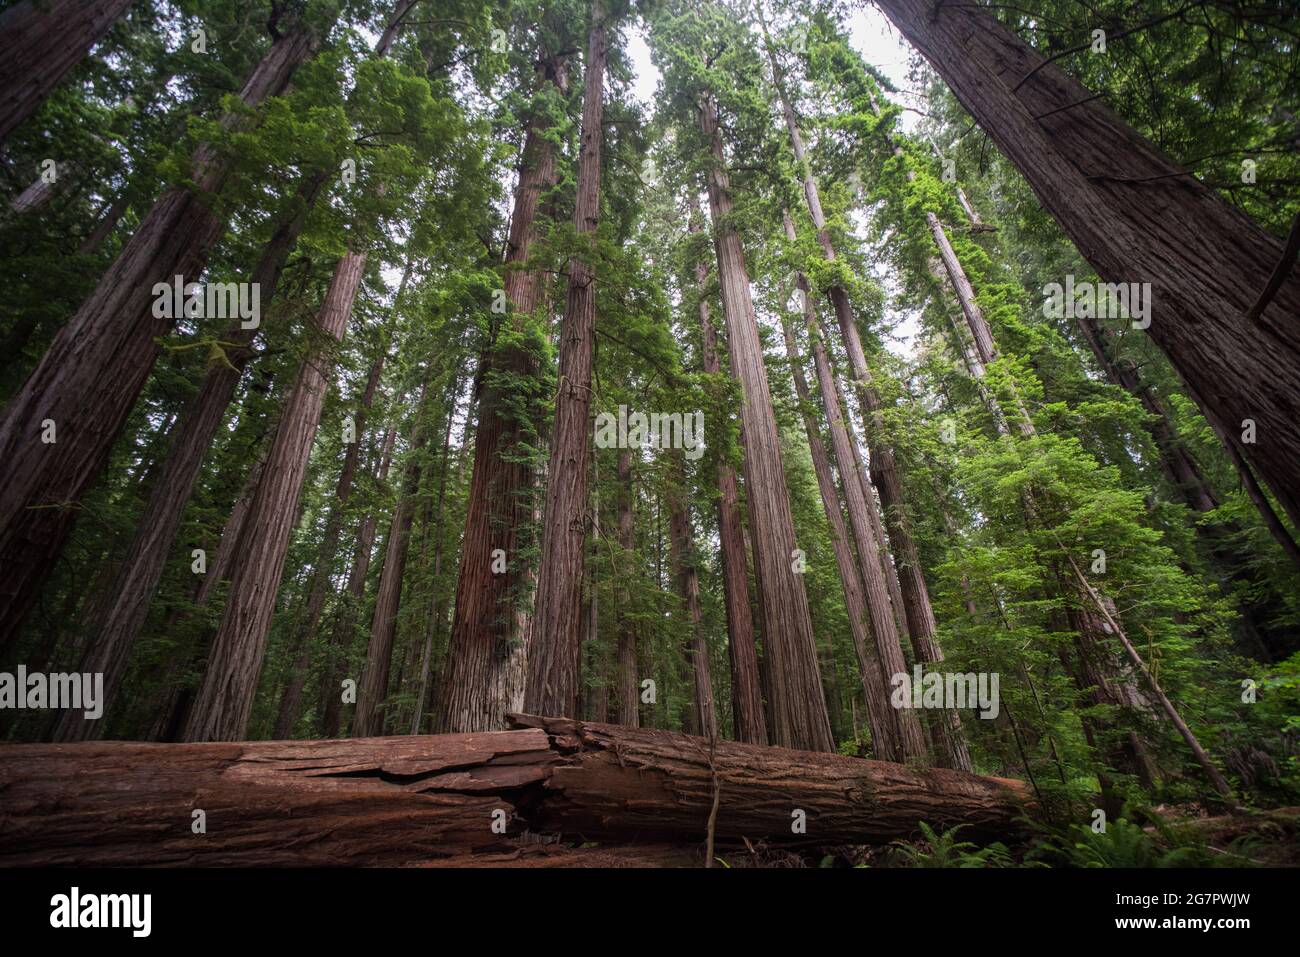 Bosque de secoyas en peligro de extinción (Sequoia sempervirens) en el parque estatal de secoyas Jedediah Smith en el norte de California, Estados Unidos. Foto de stock